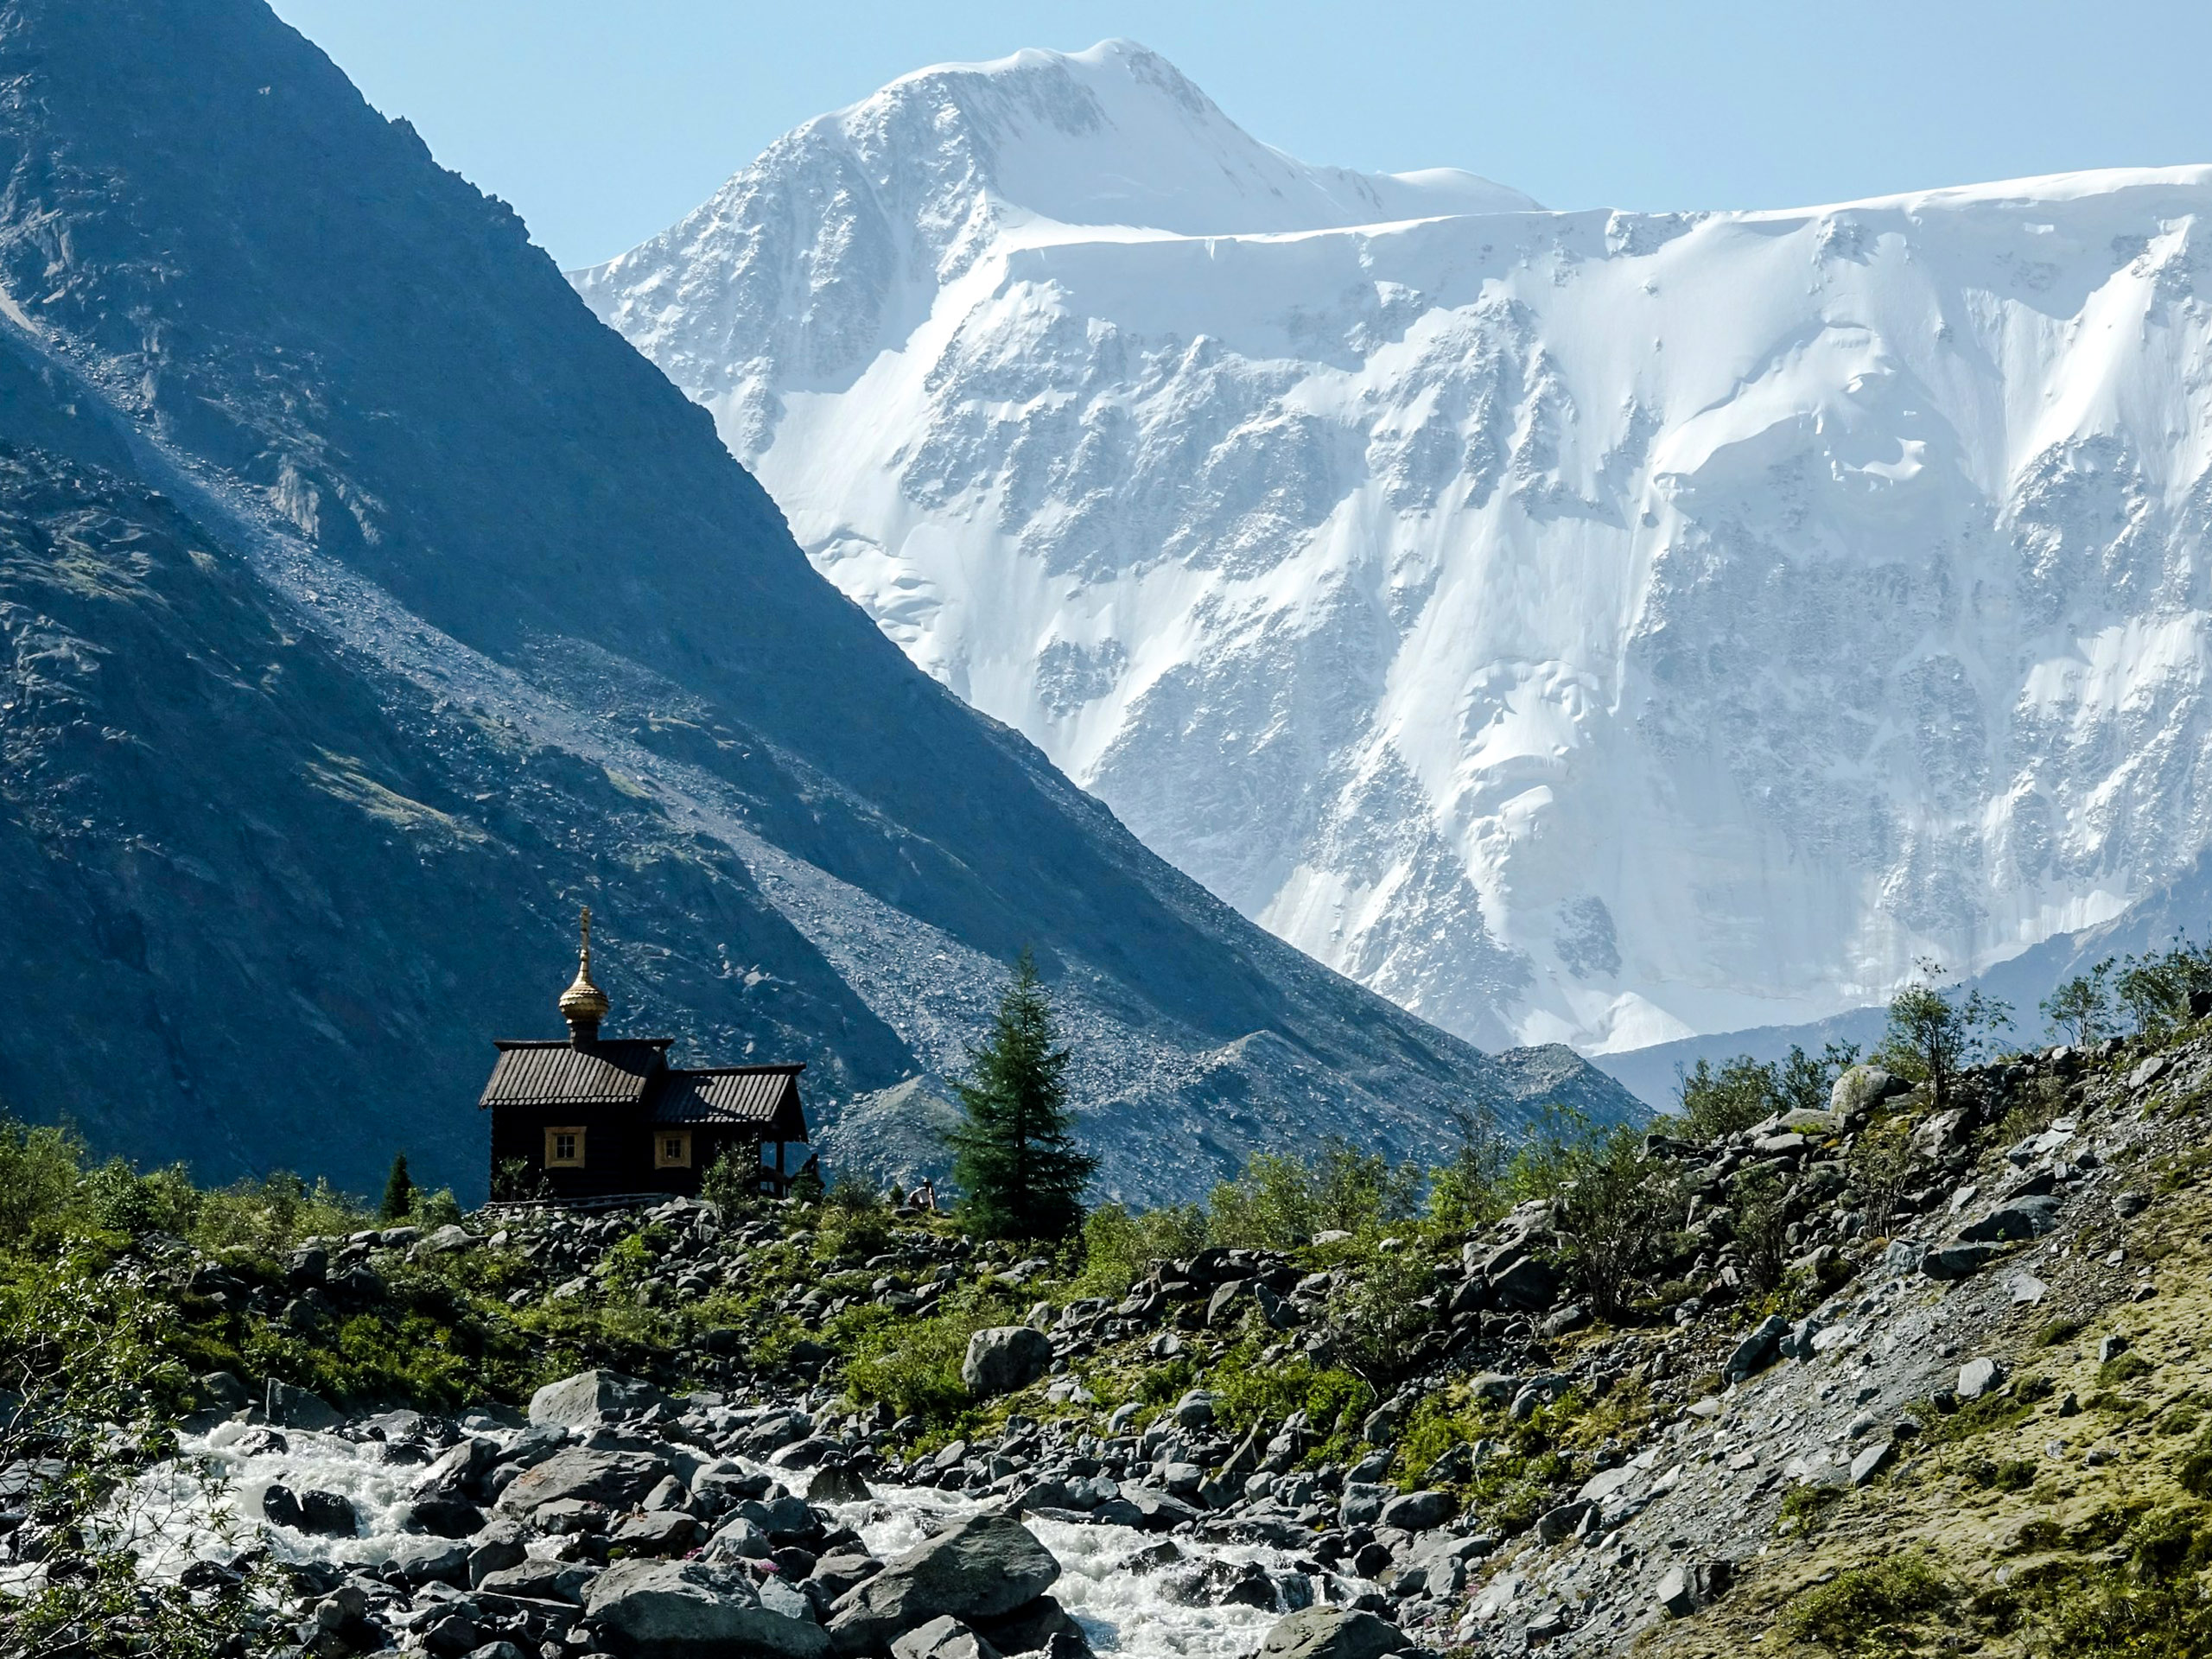 Snow capped peaks in Altai